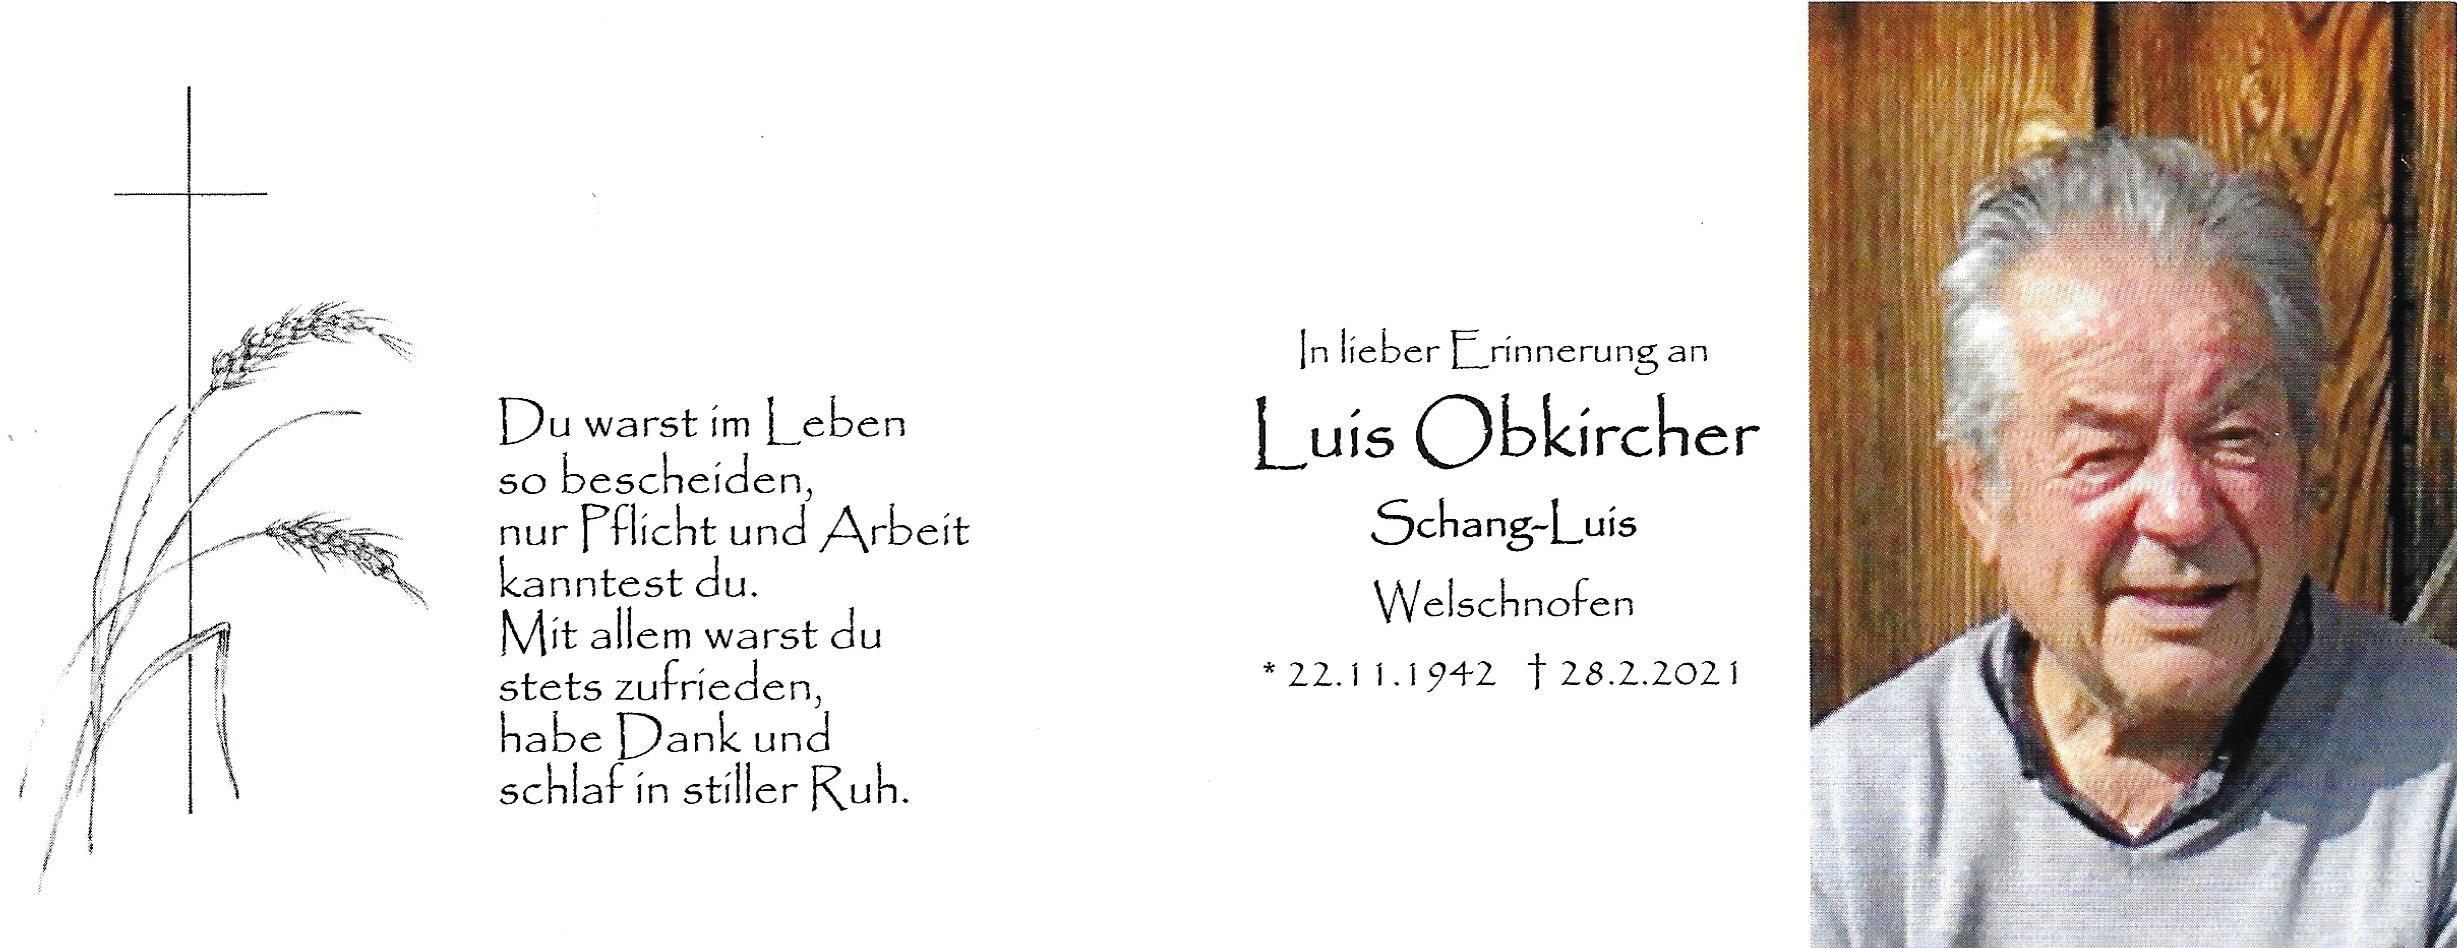 Luis Obkircher Schang